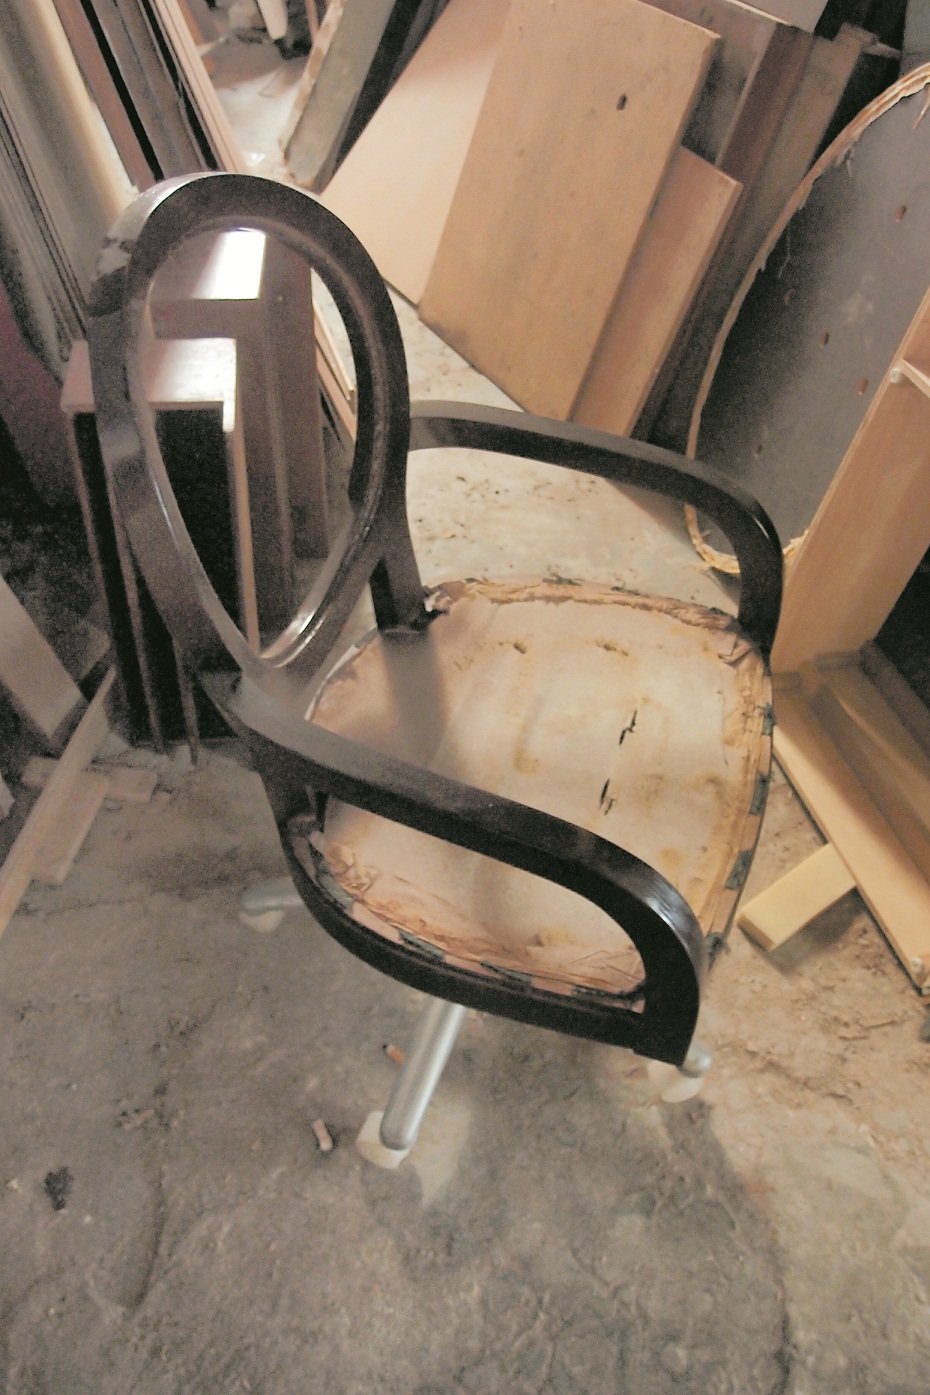 所回收的木椅子虽然看似不起眼，但原料皆属于牢固耐用的实木。